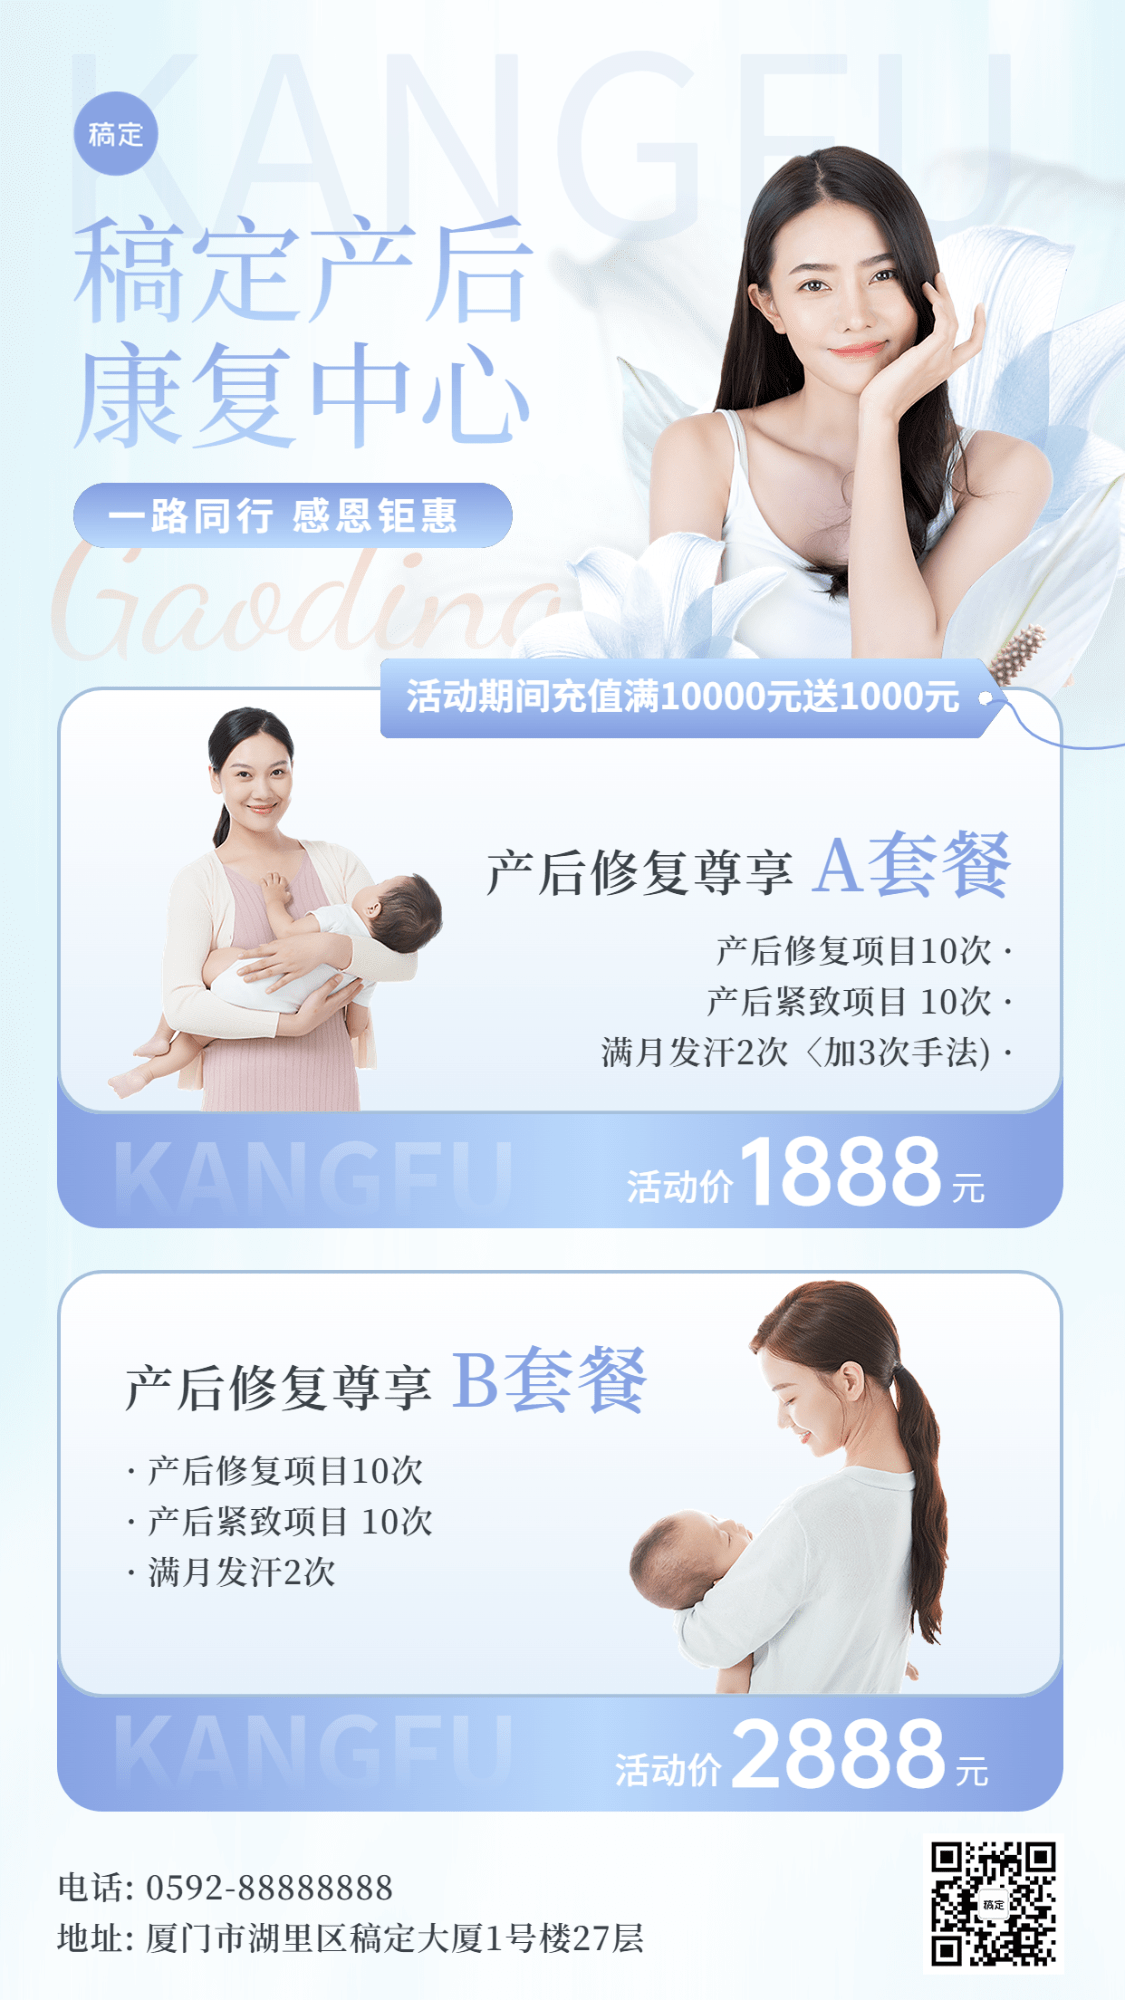 母婴亲子产后康复中心产品营销手机海报预览效果